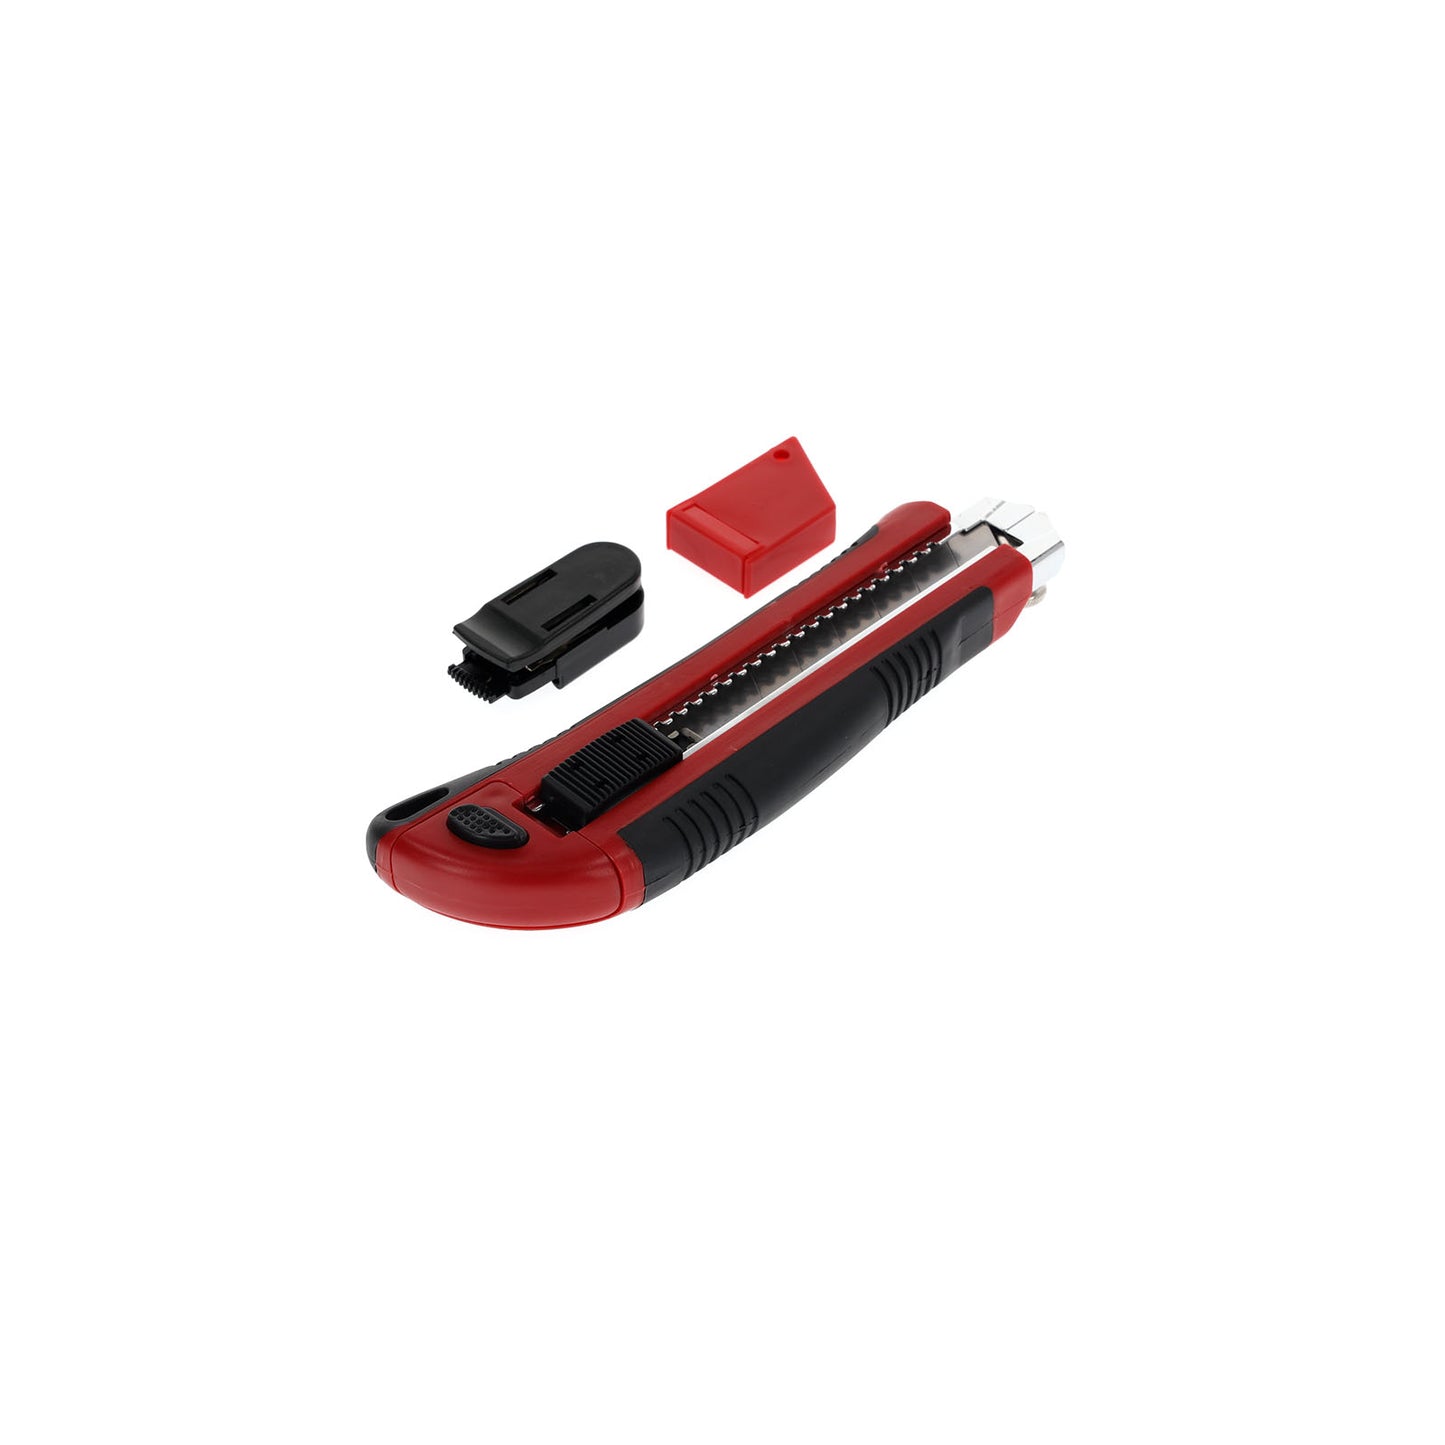 GEDORE red R93200025 - Cúter con 5 cuchillas, 25 mm de ancho, con clip (3301605)